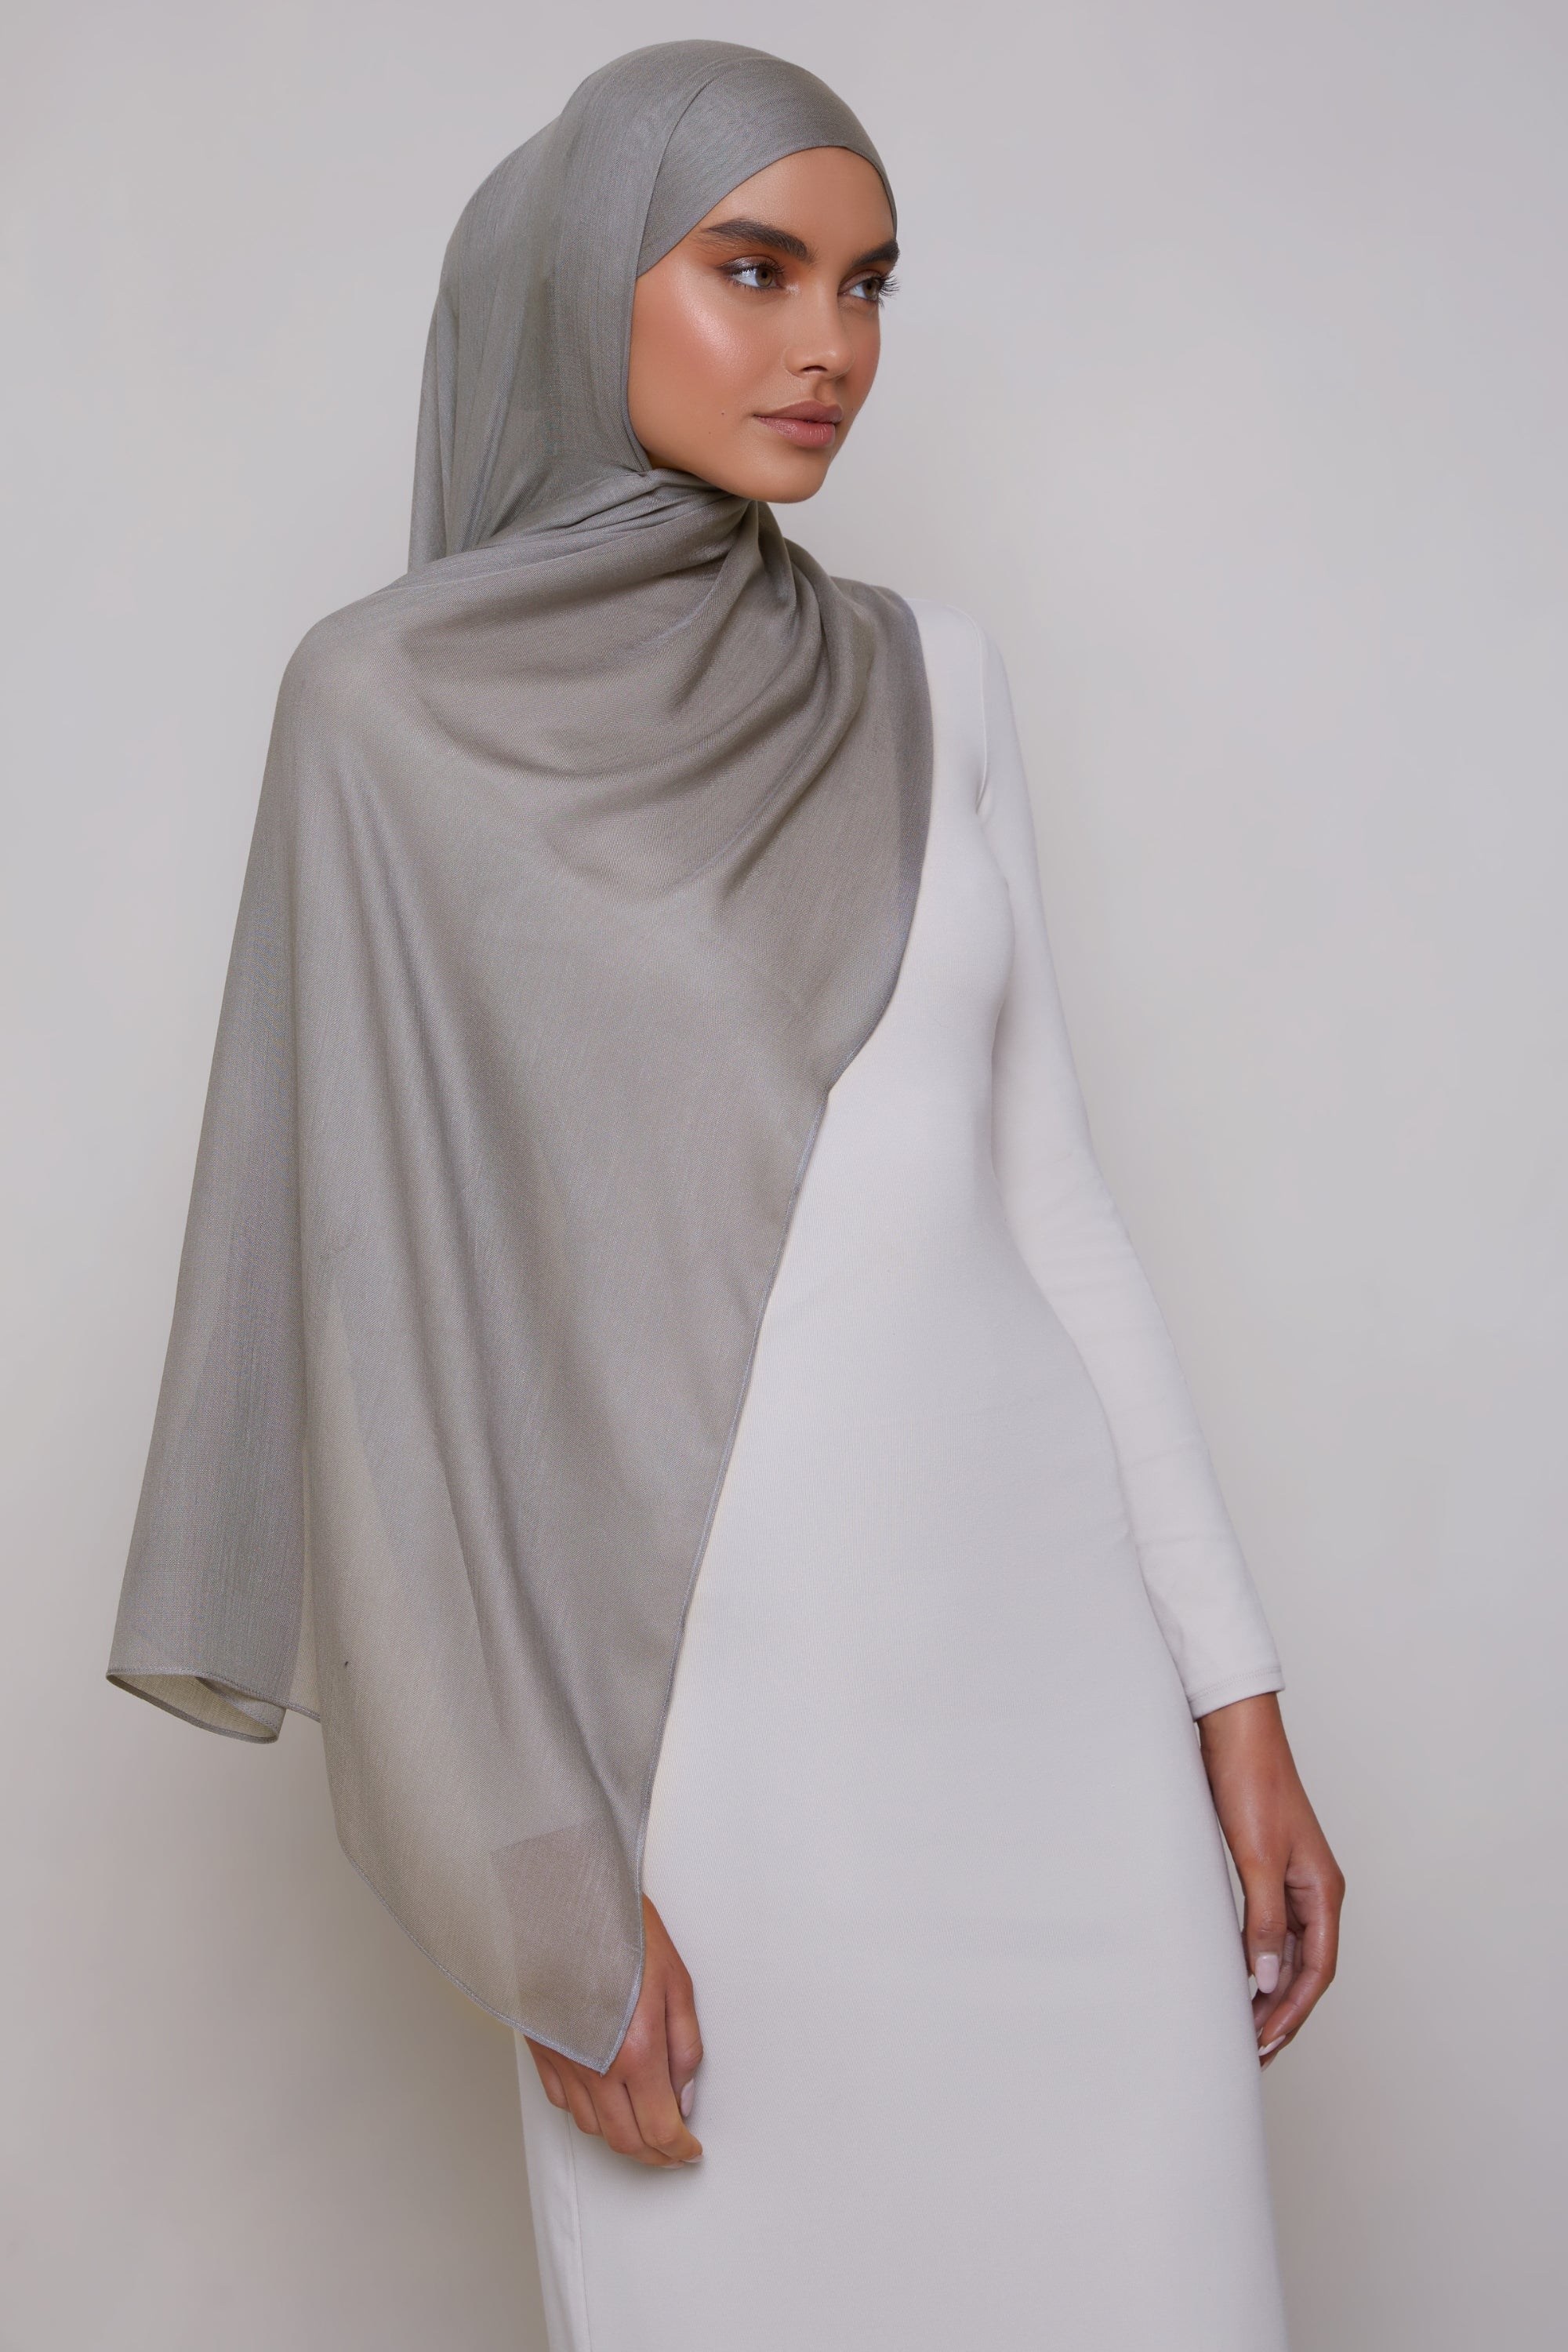 Modal Hijab - Mist Veiled 